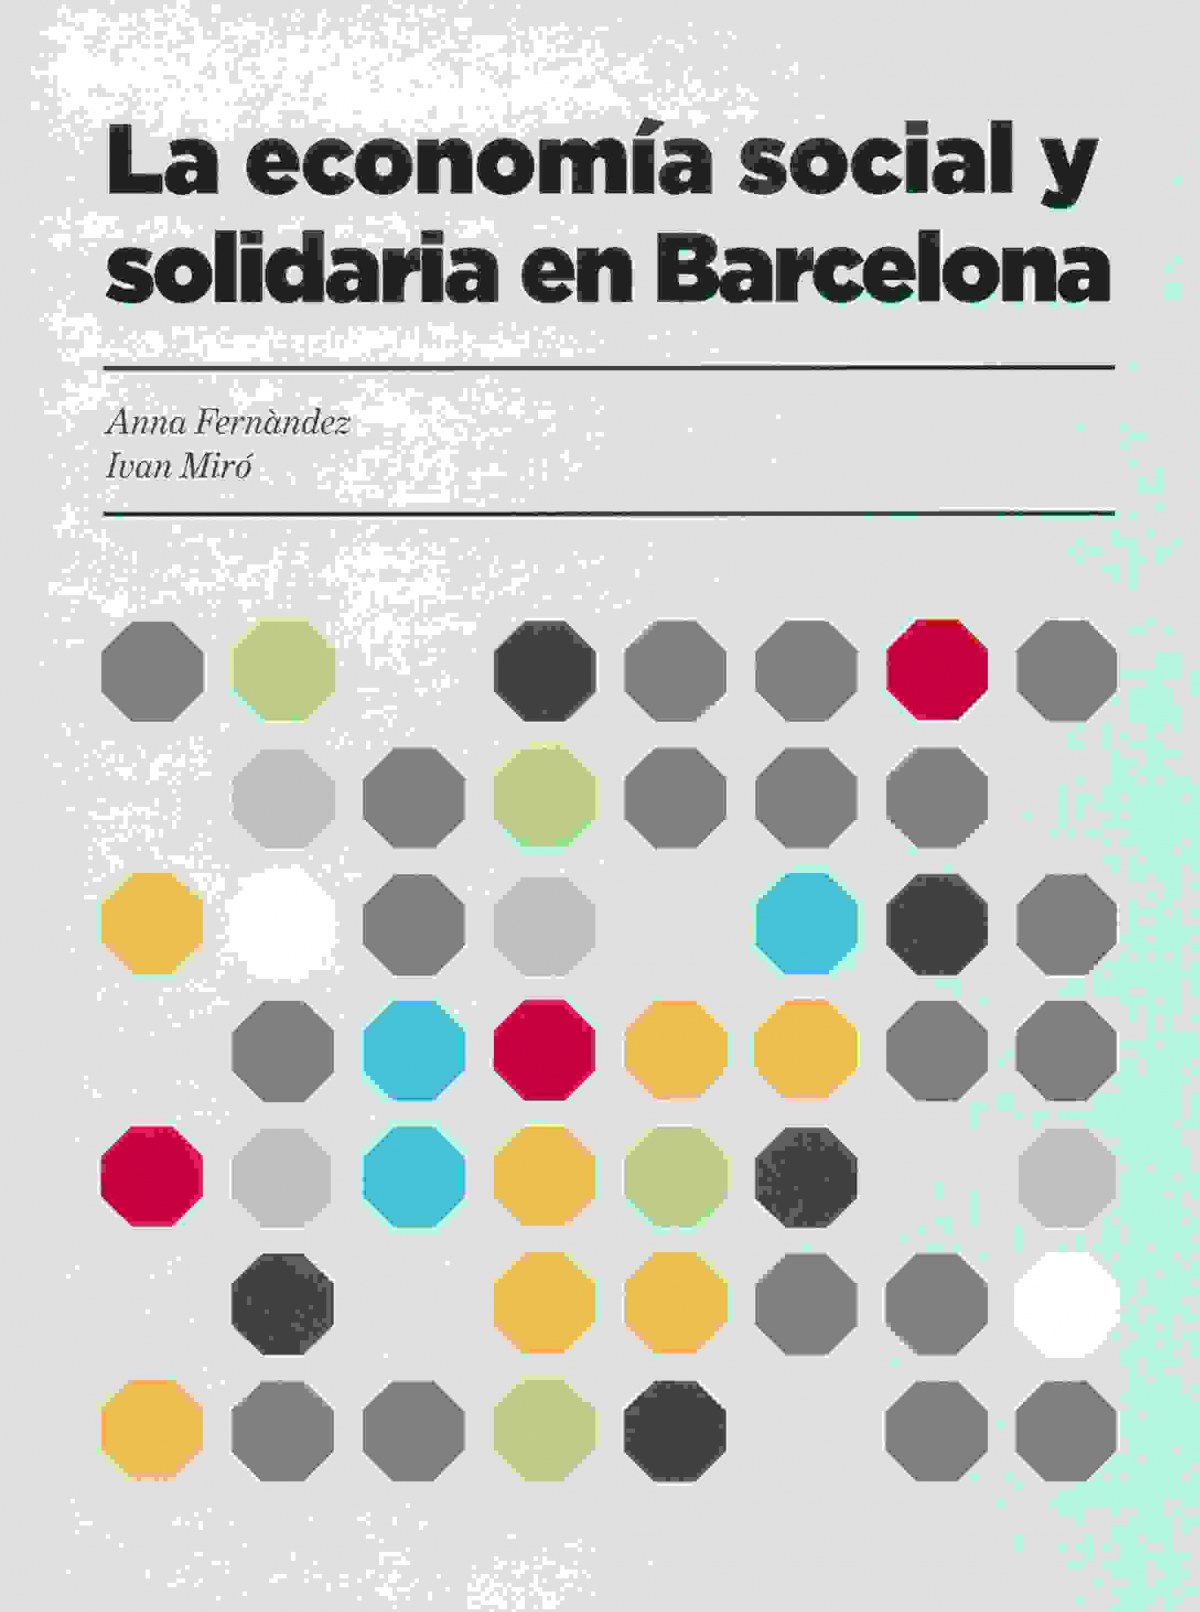 L'economia social i solidària a barcelona